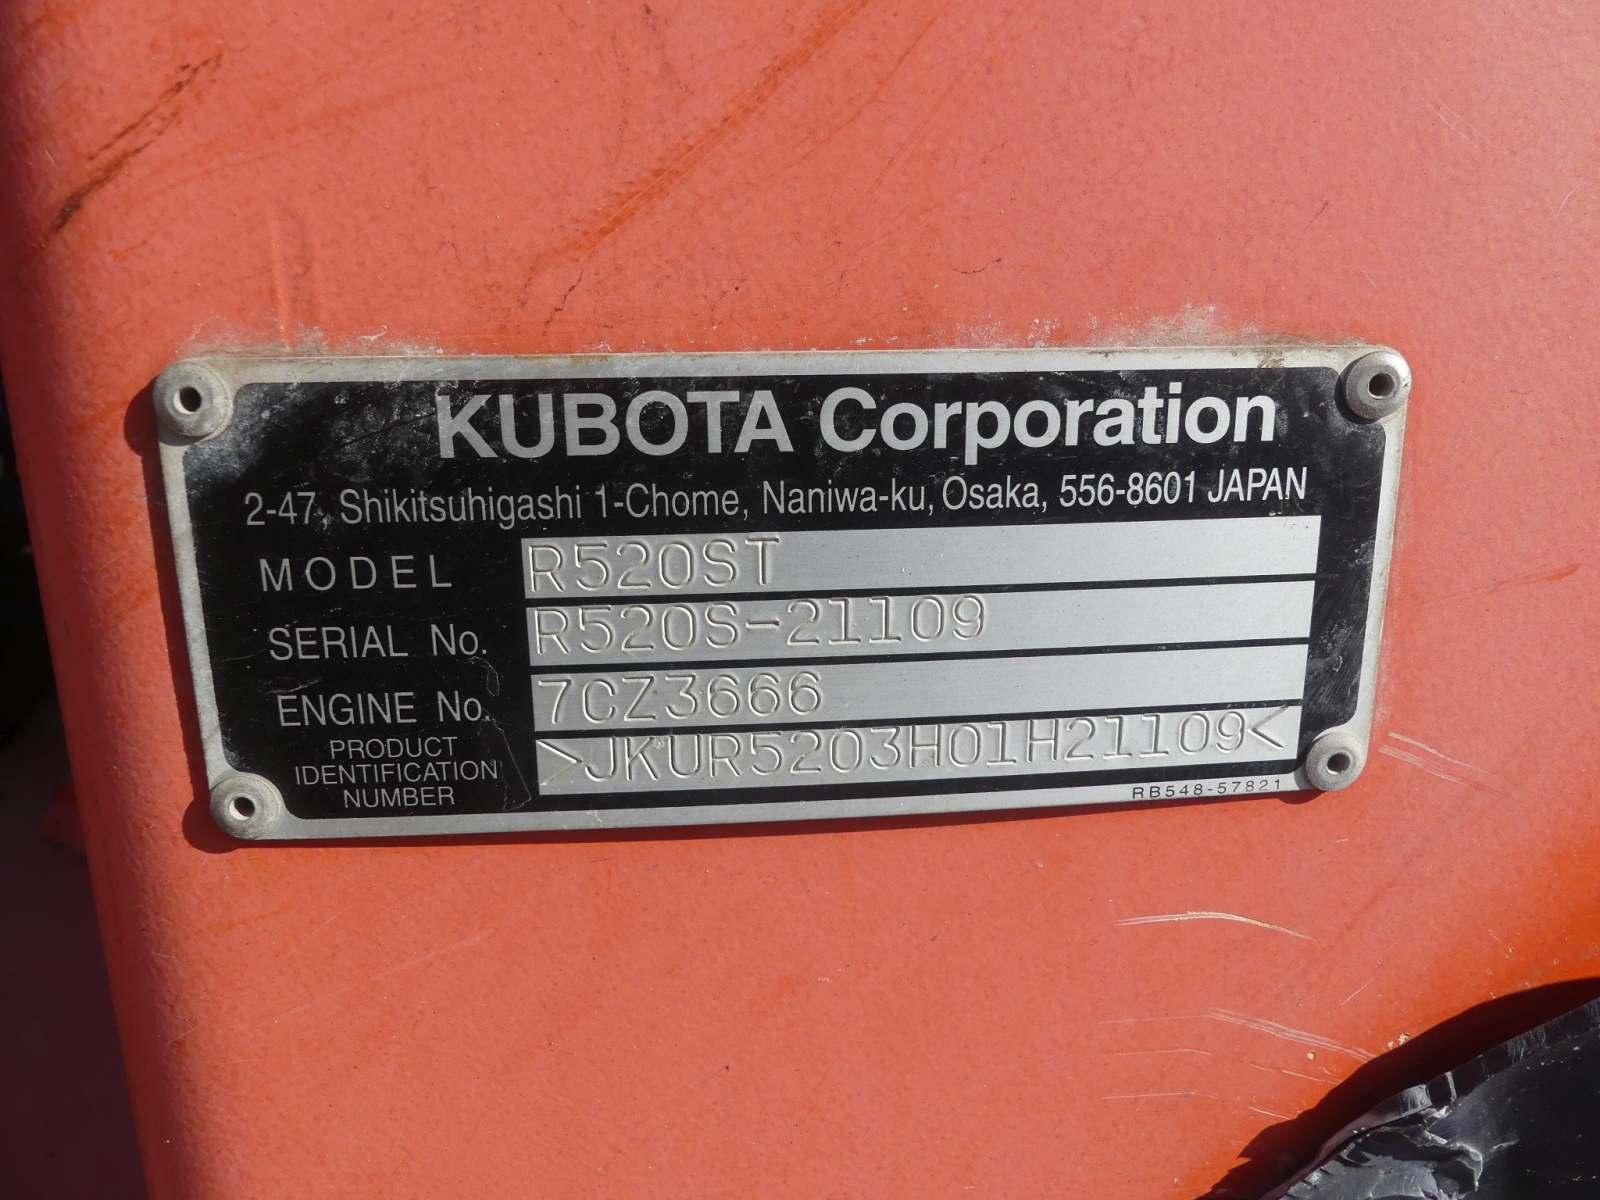 2013 Kubota R520ST Rubber-tired Loader, s/n 21109: Rollbar, GP Bkt. & Forks